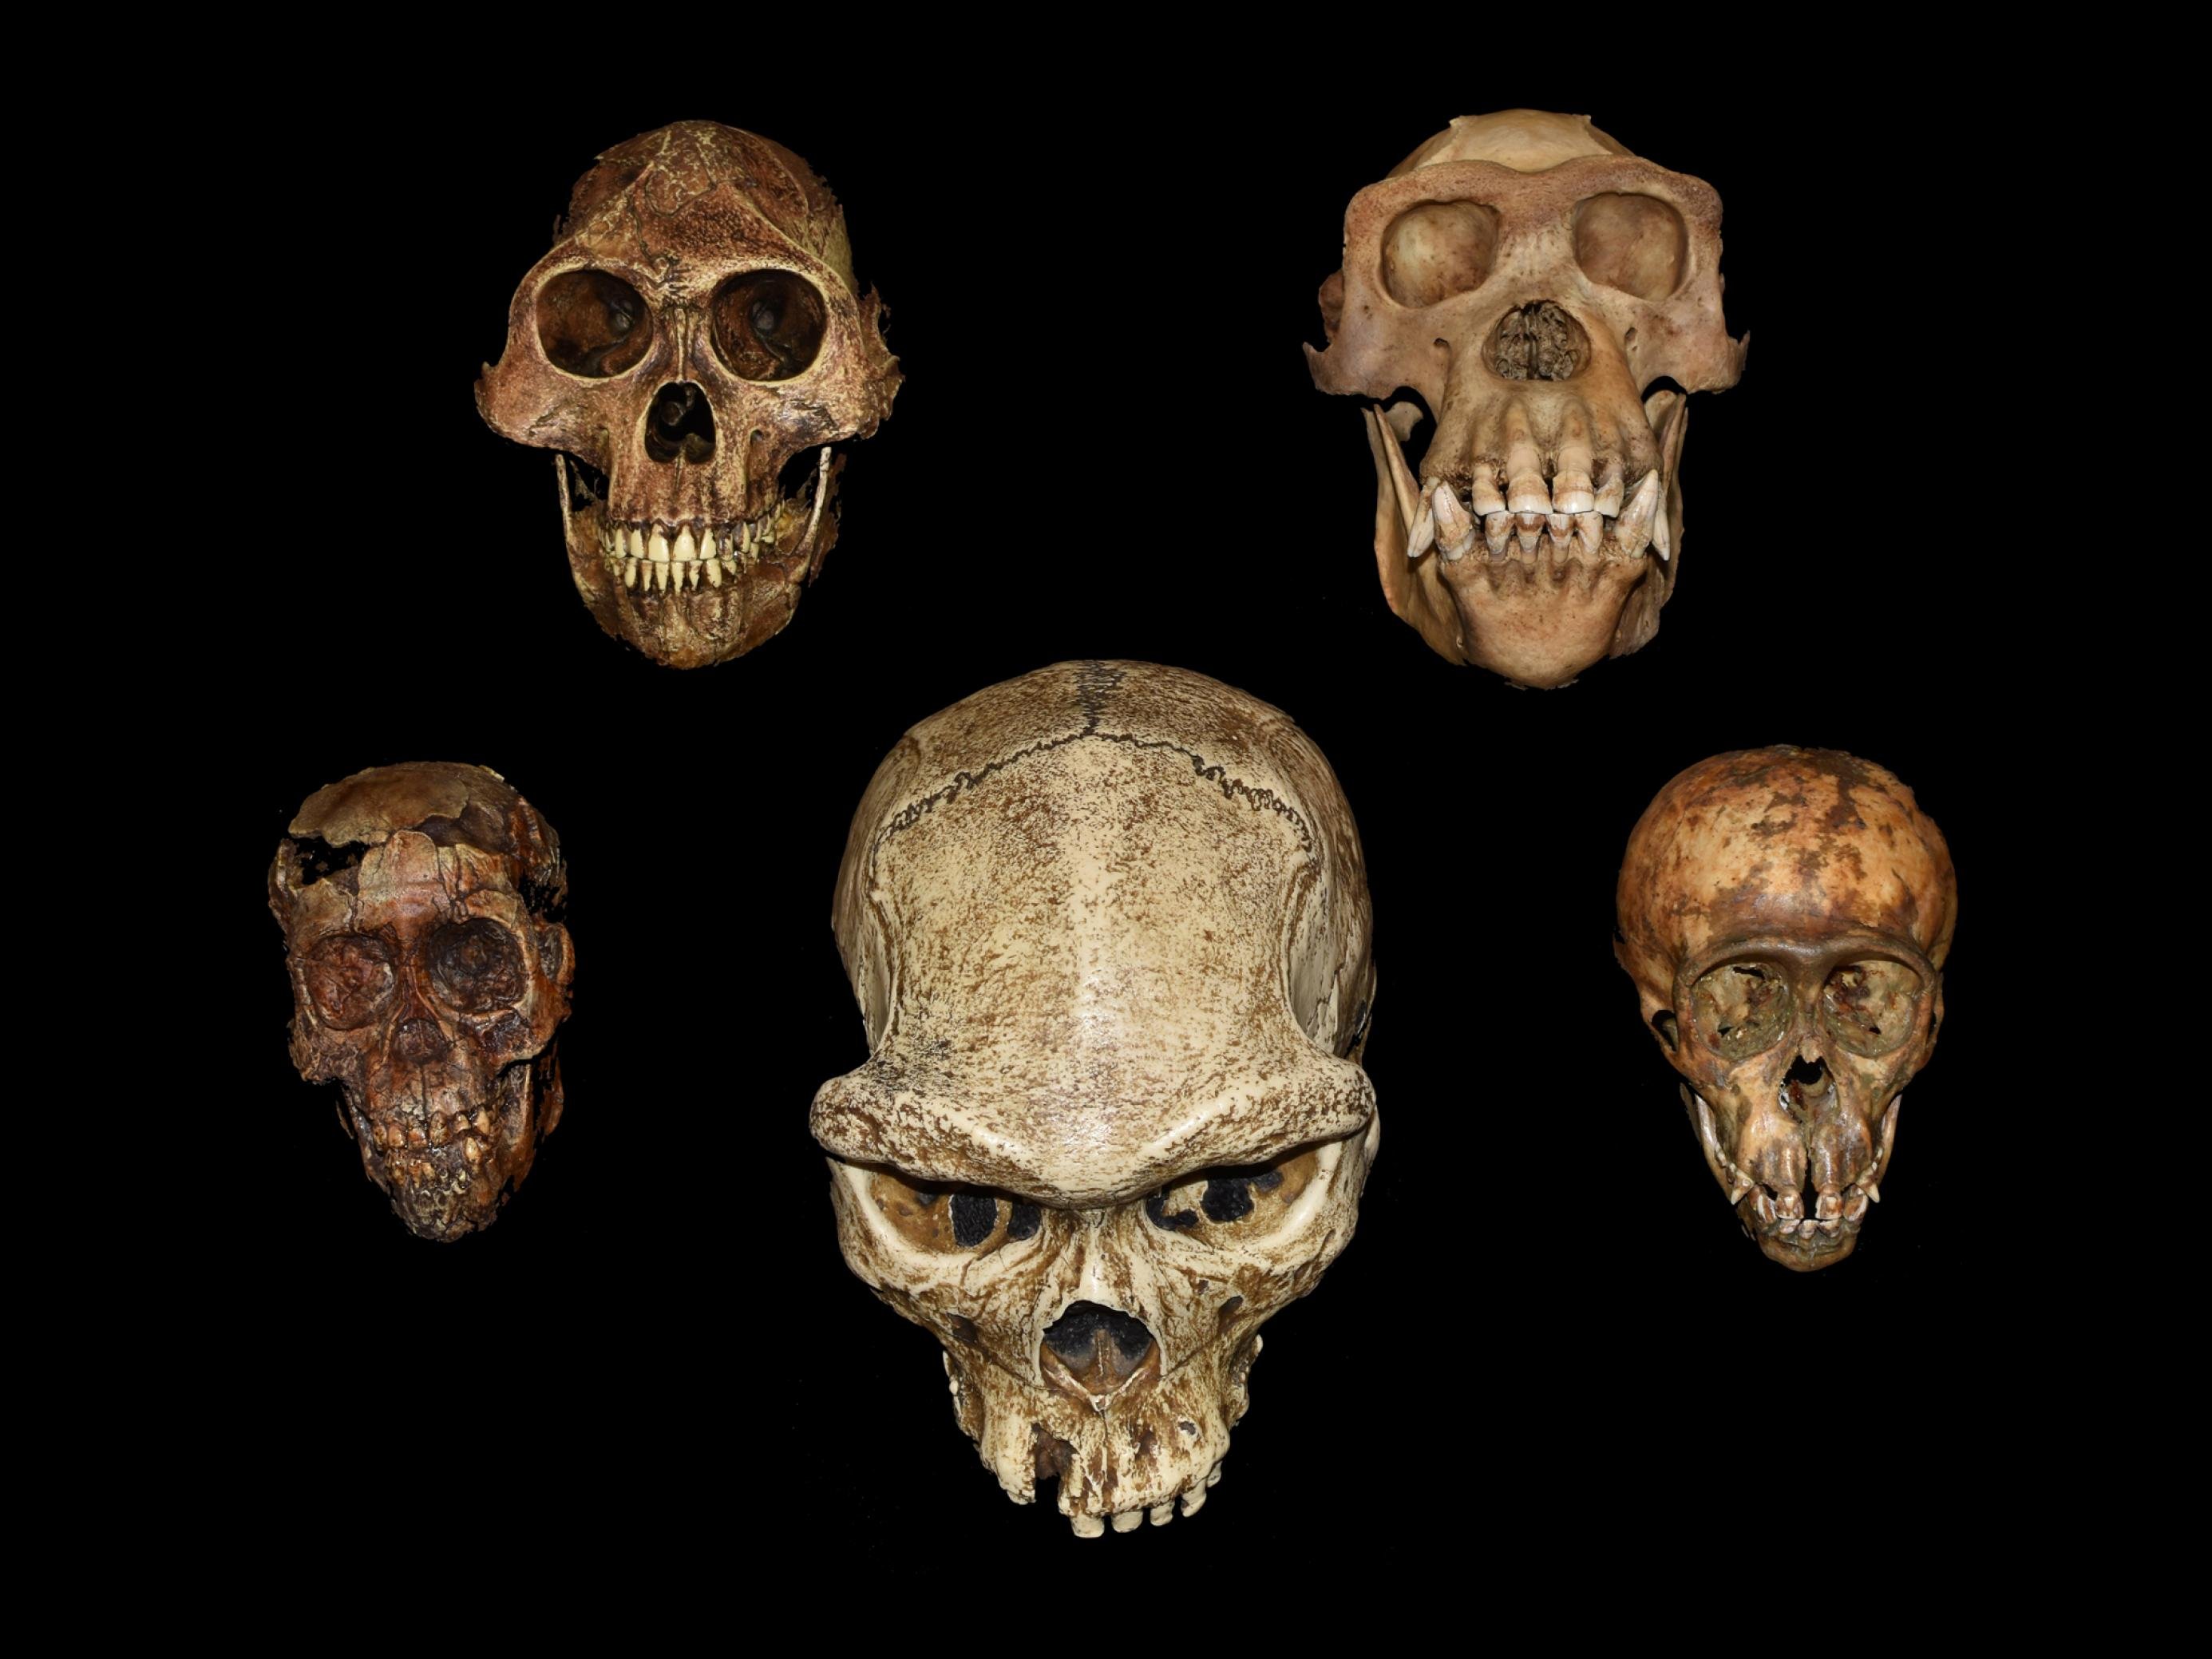 Vor schwarzem Hintergrund sind fünf verschiedene Schädel in bräunlichen und gelblichen Farben zu sehen, die den Betrachter anschauen. Zwei sind deutlich kleiner und wirken kindlich, am größten ist der Schädel eines Homo erectus in der Mitte. Deutlich sind bei allen die Zähne zu erkennen.